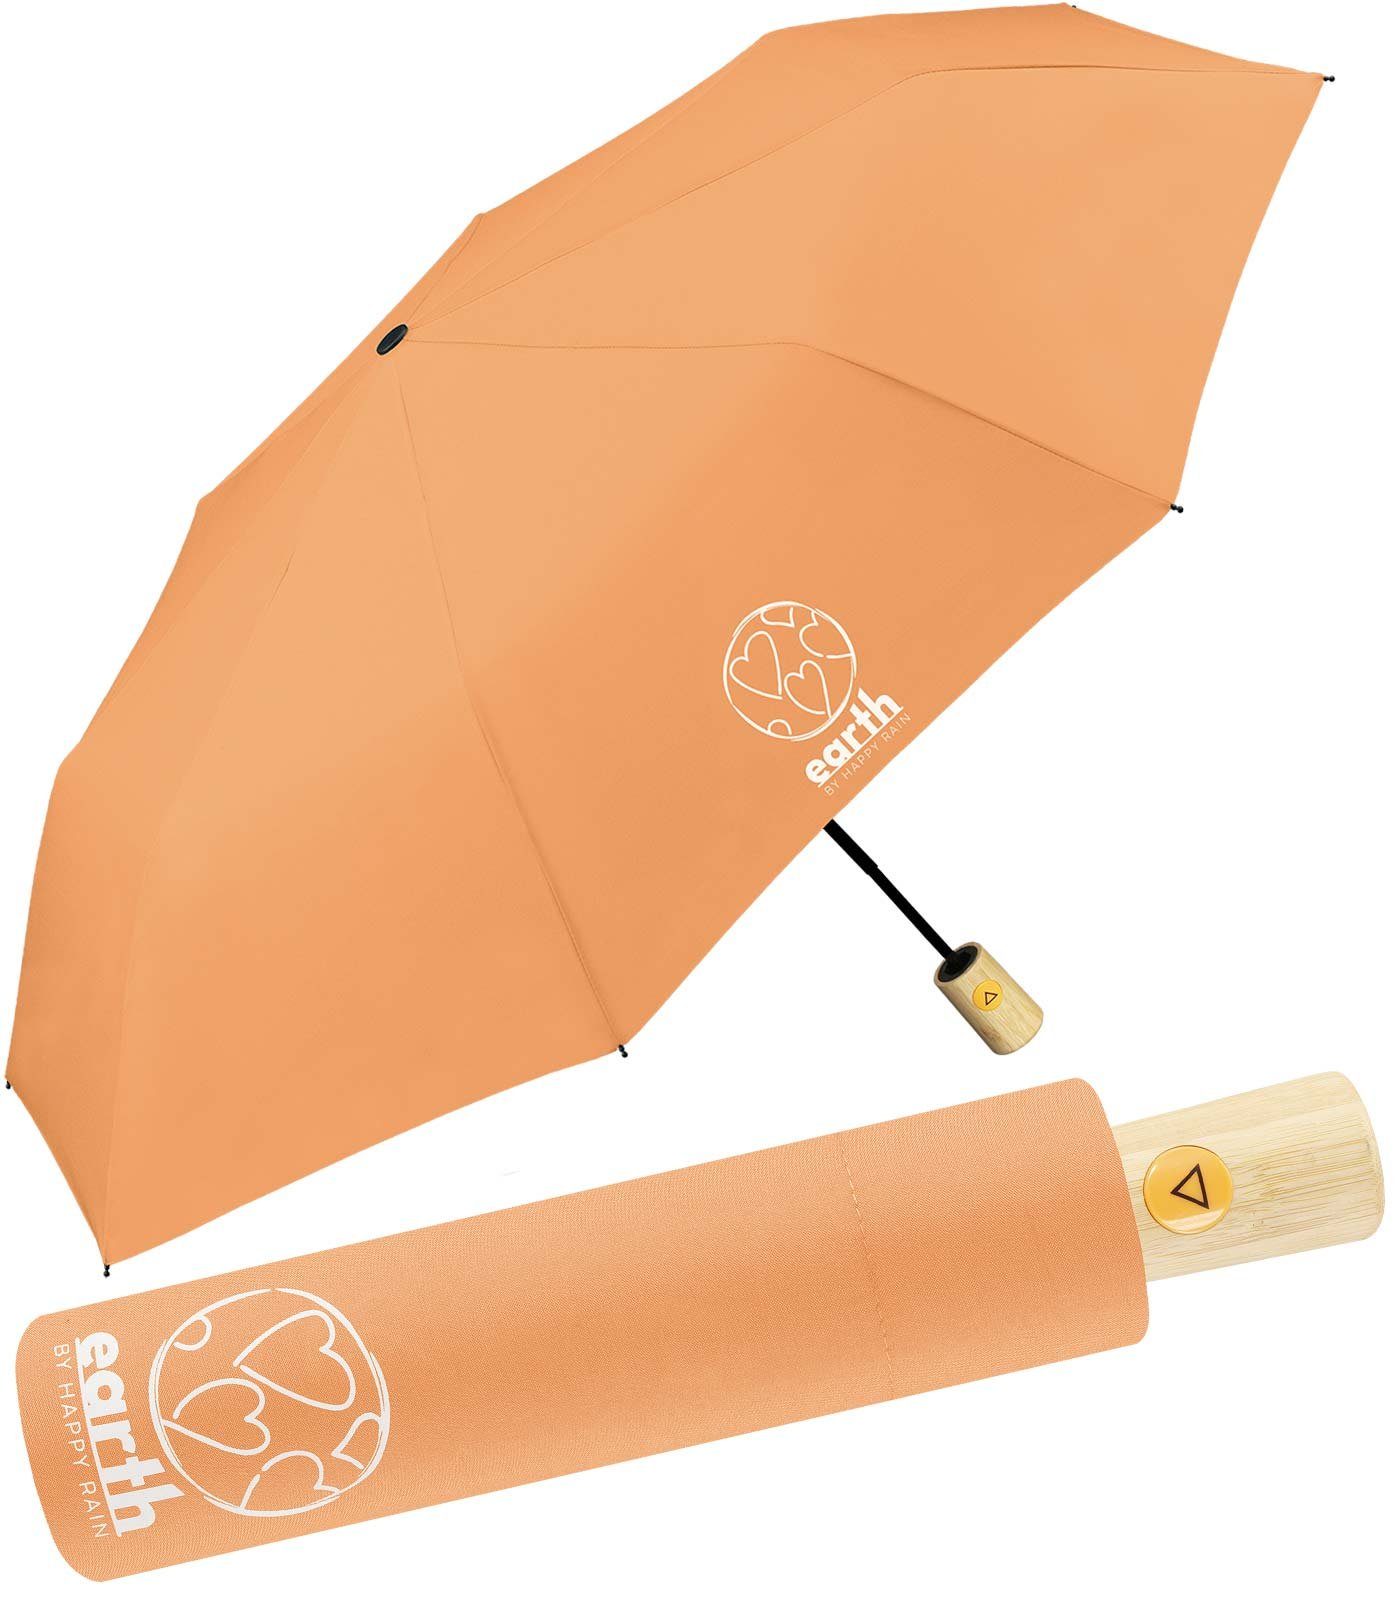 die tun gut HAPPY Umwelt Earth orange - Taschenregenschirm Schirm etwas für RAIN mit geschützt Auf-Automatik, nachhaltiger